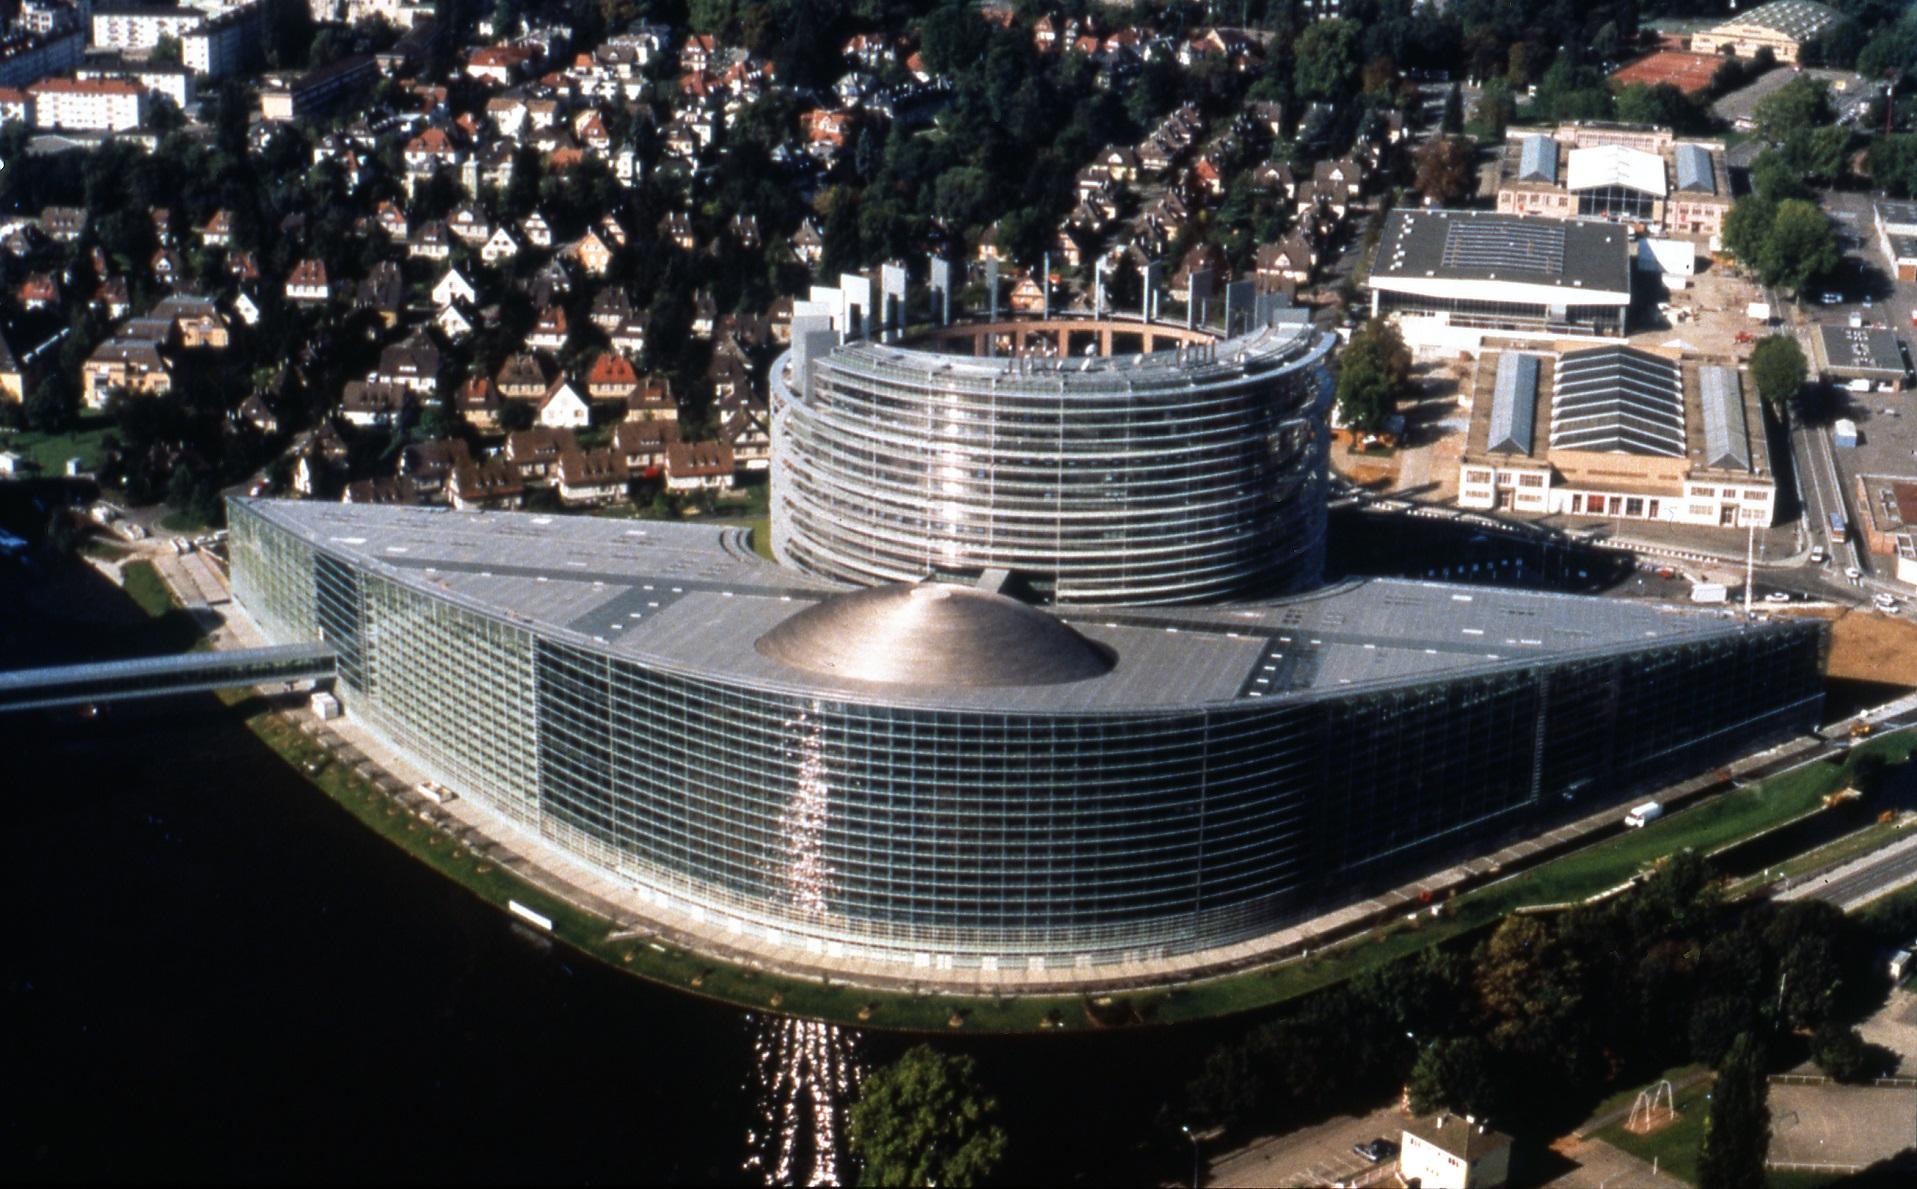 European Parliament in Strasbourg